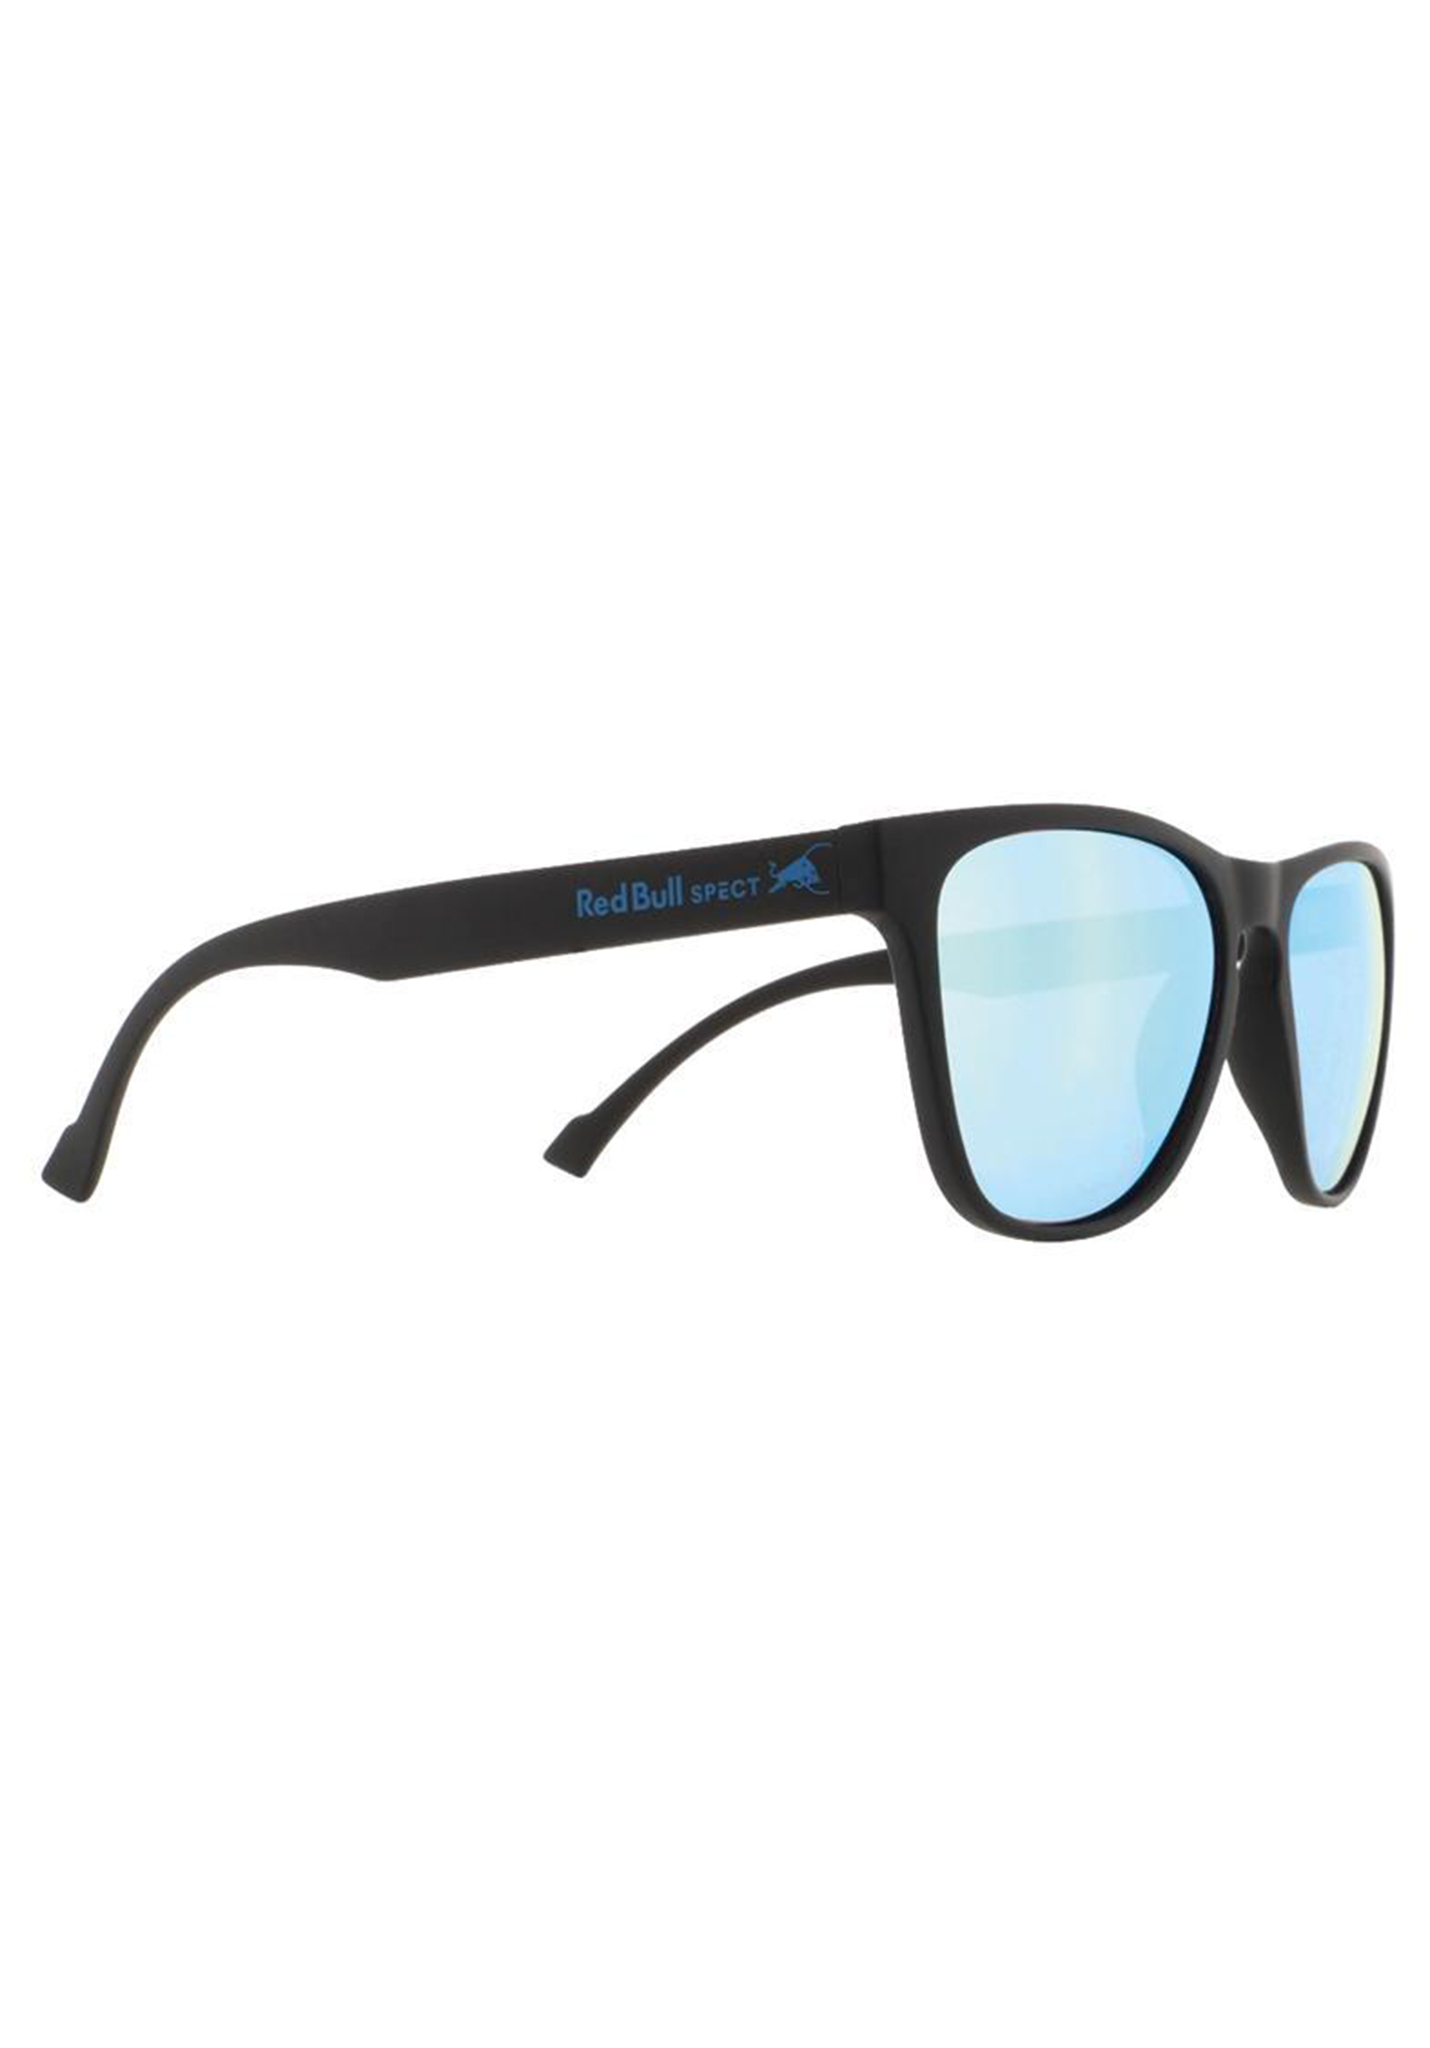 Red Bull SPECT Eyewear Spark Sonnenbrillen schwarz/rauch mit eisblauem spiegel pol One Size